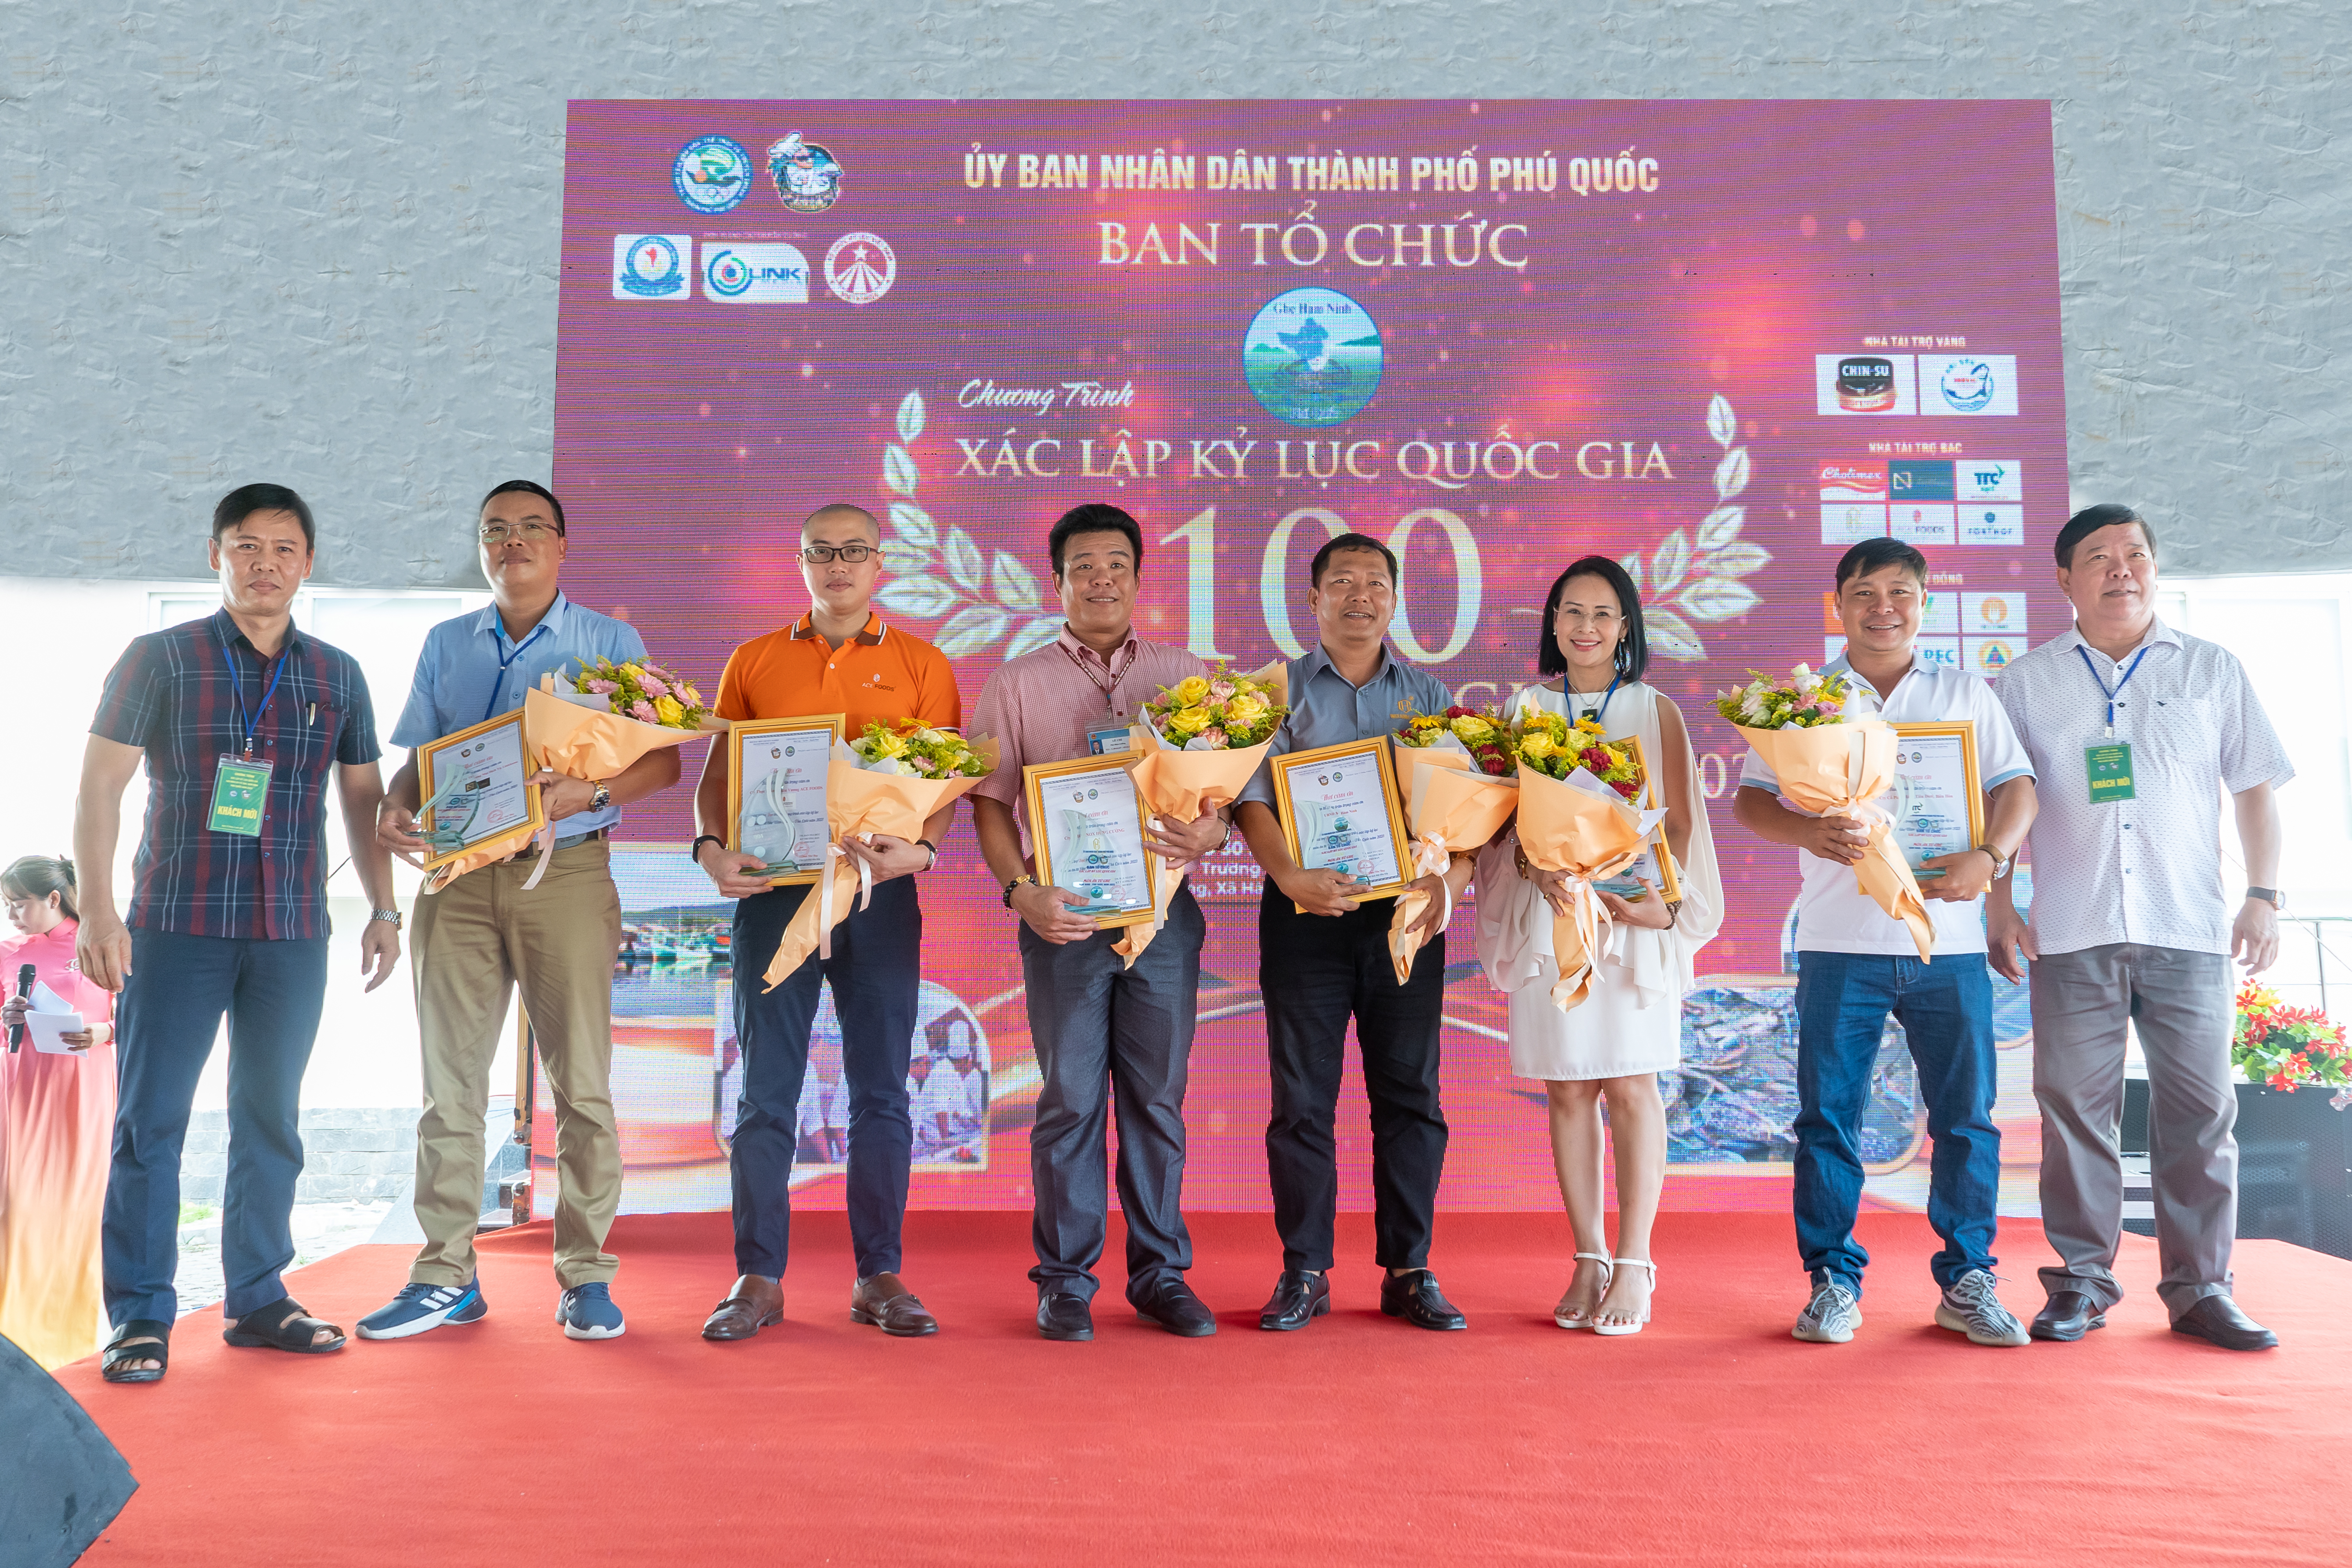 Thiên Vương ACE FOODS vinh hạnh là nhà tài trợ sự kiện xác lập kỉ lúc 100 món ngon từ ghẹ Hàm Ninh - Phú Quốc